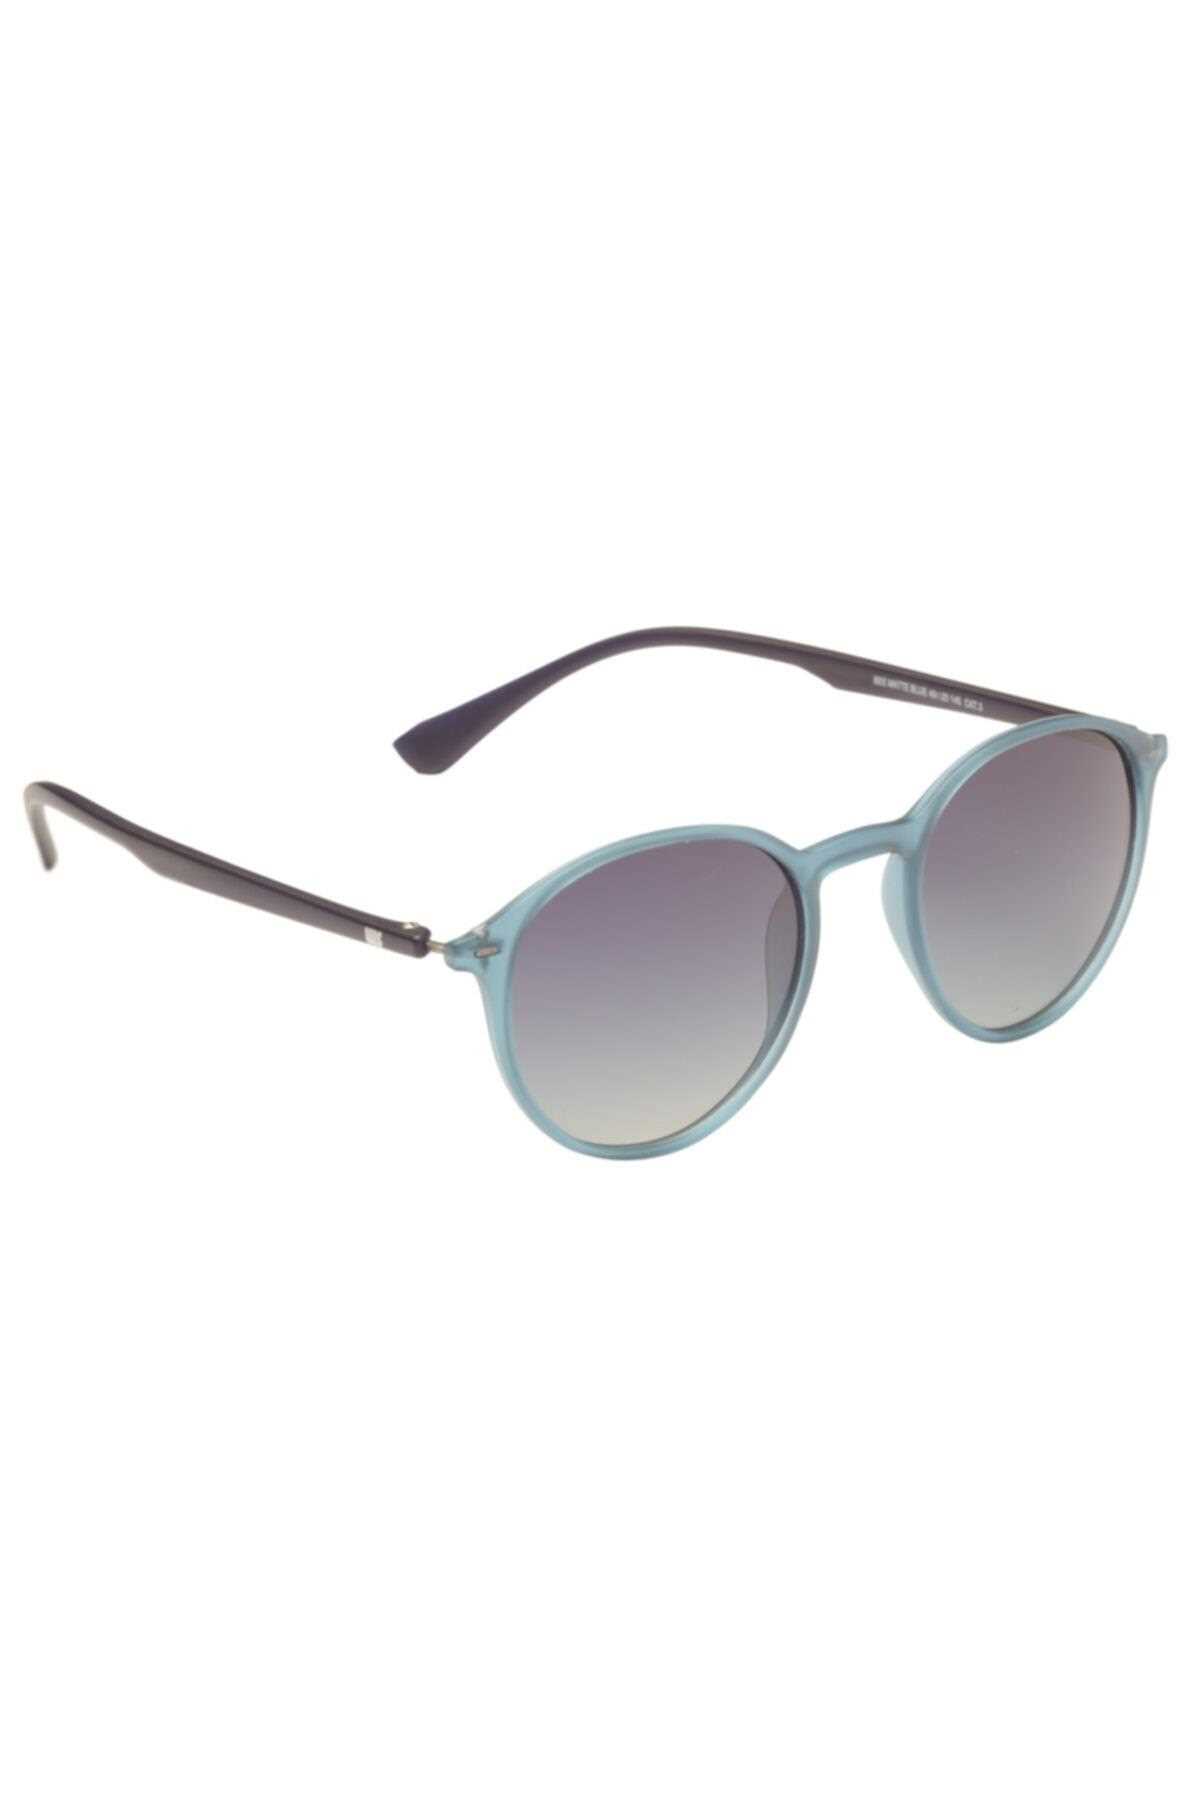 خرید پستی عینک آفتابی زنانه جدید برند wildsoul آبی TY129100216